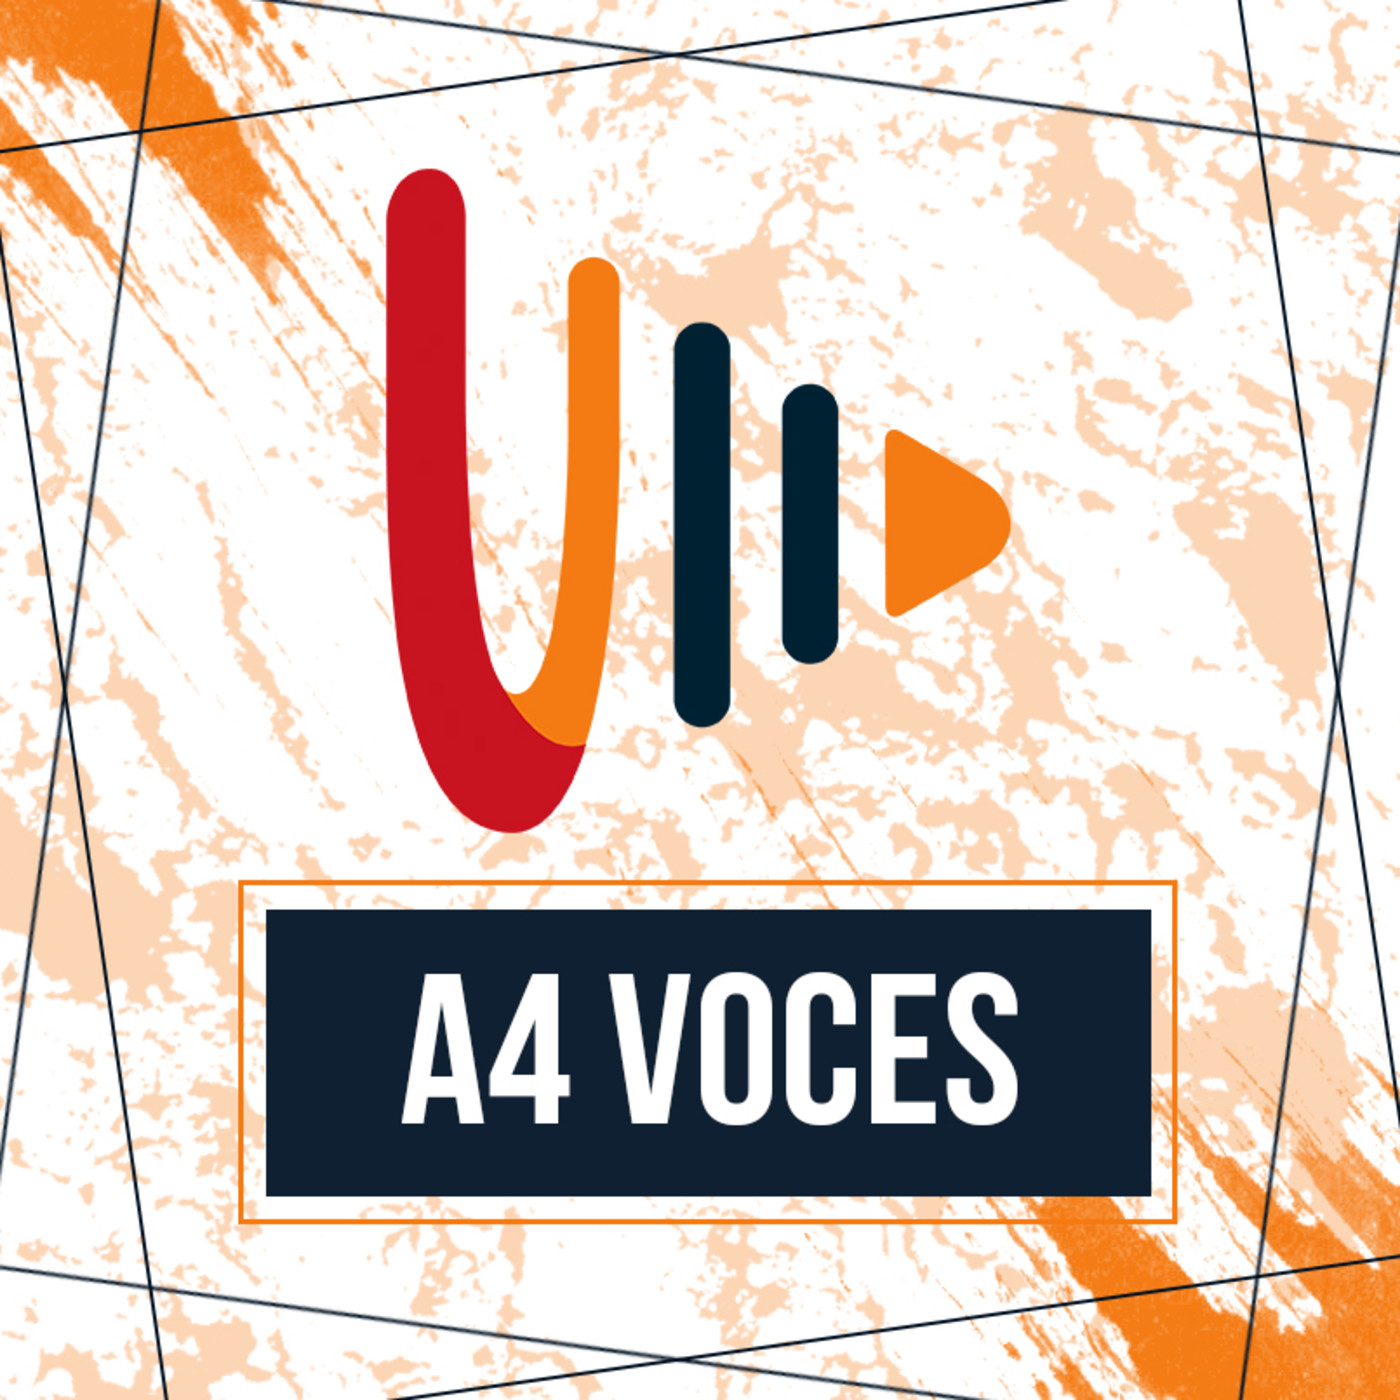 A4 Voces entrevista con Camila Morentes - Organizadora eco alternativa